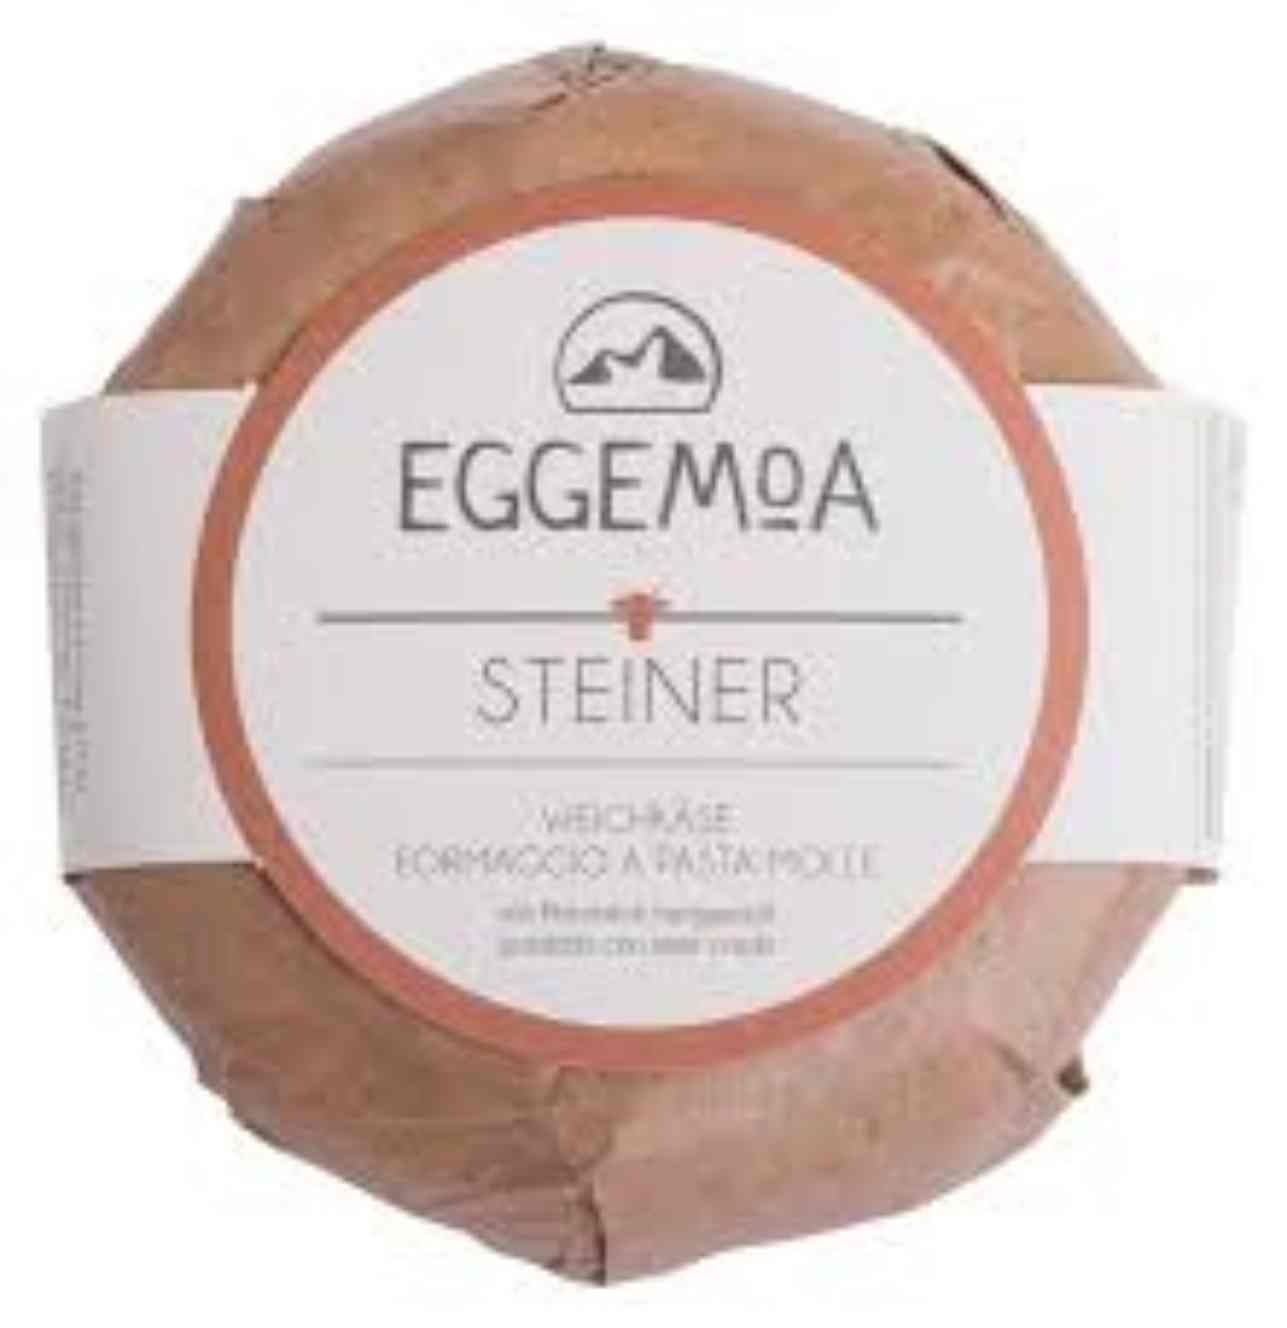 Weichkäse "Steiner" - Eggemoa